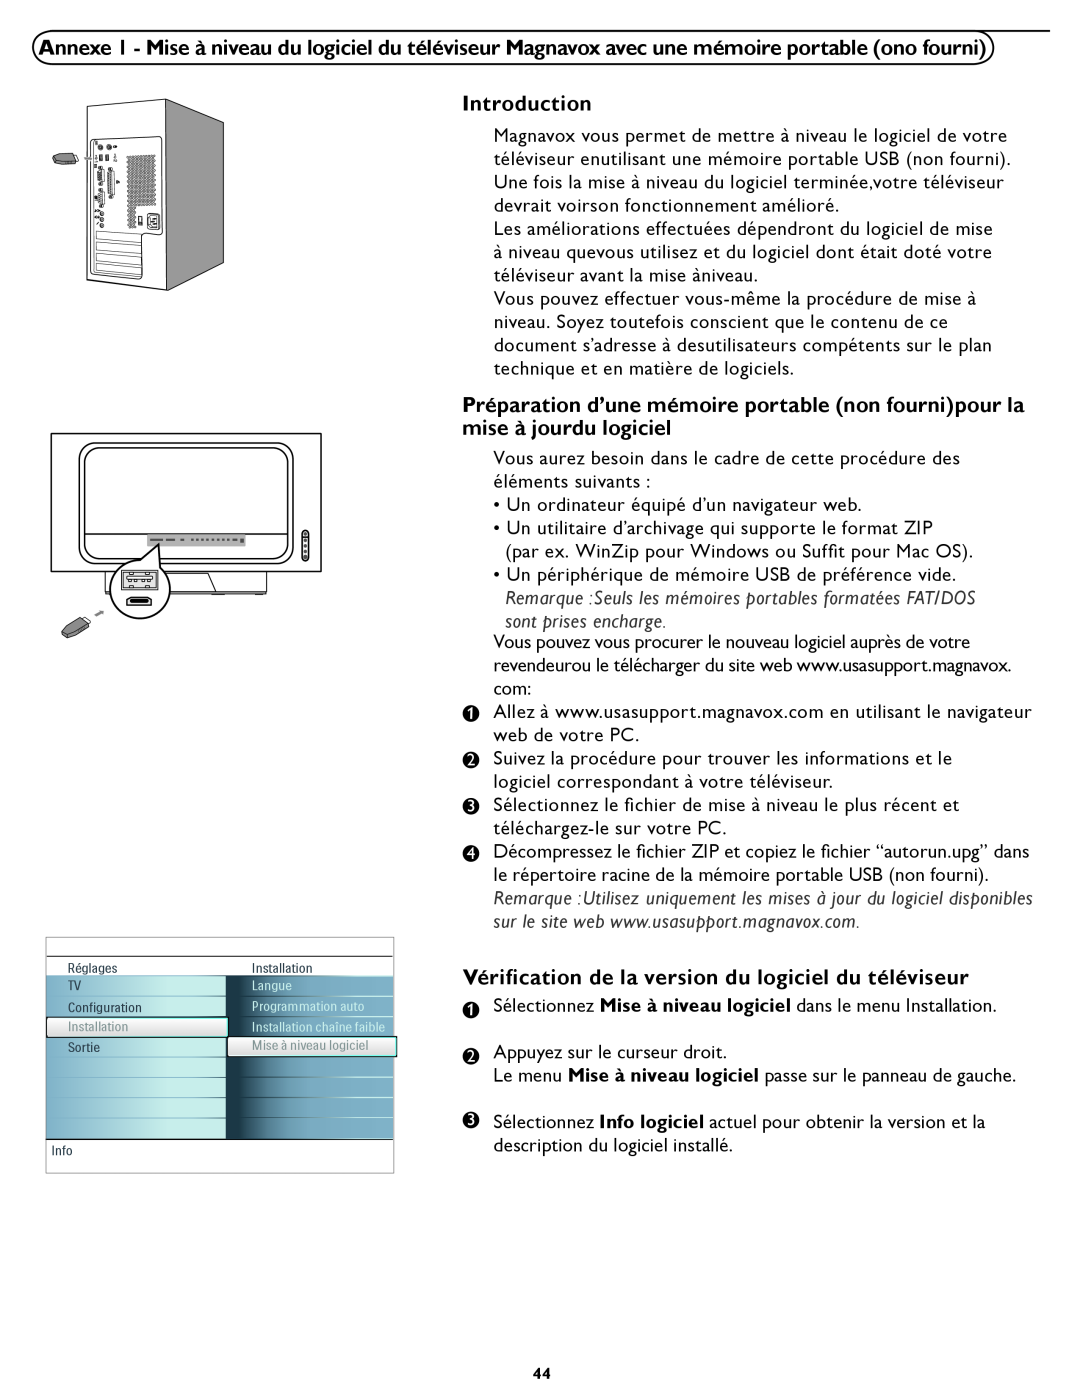 Magnavox 26MD/32MD251D user manual Introduction, Vériﬁcation de la version du logiciel du téléviseur, sont prises encharge 